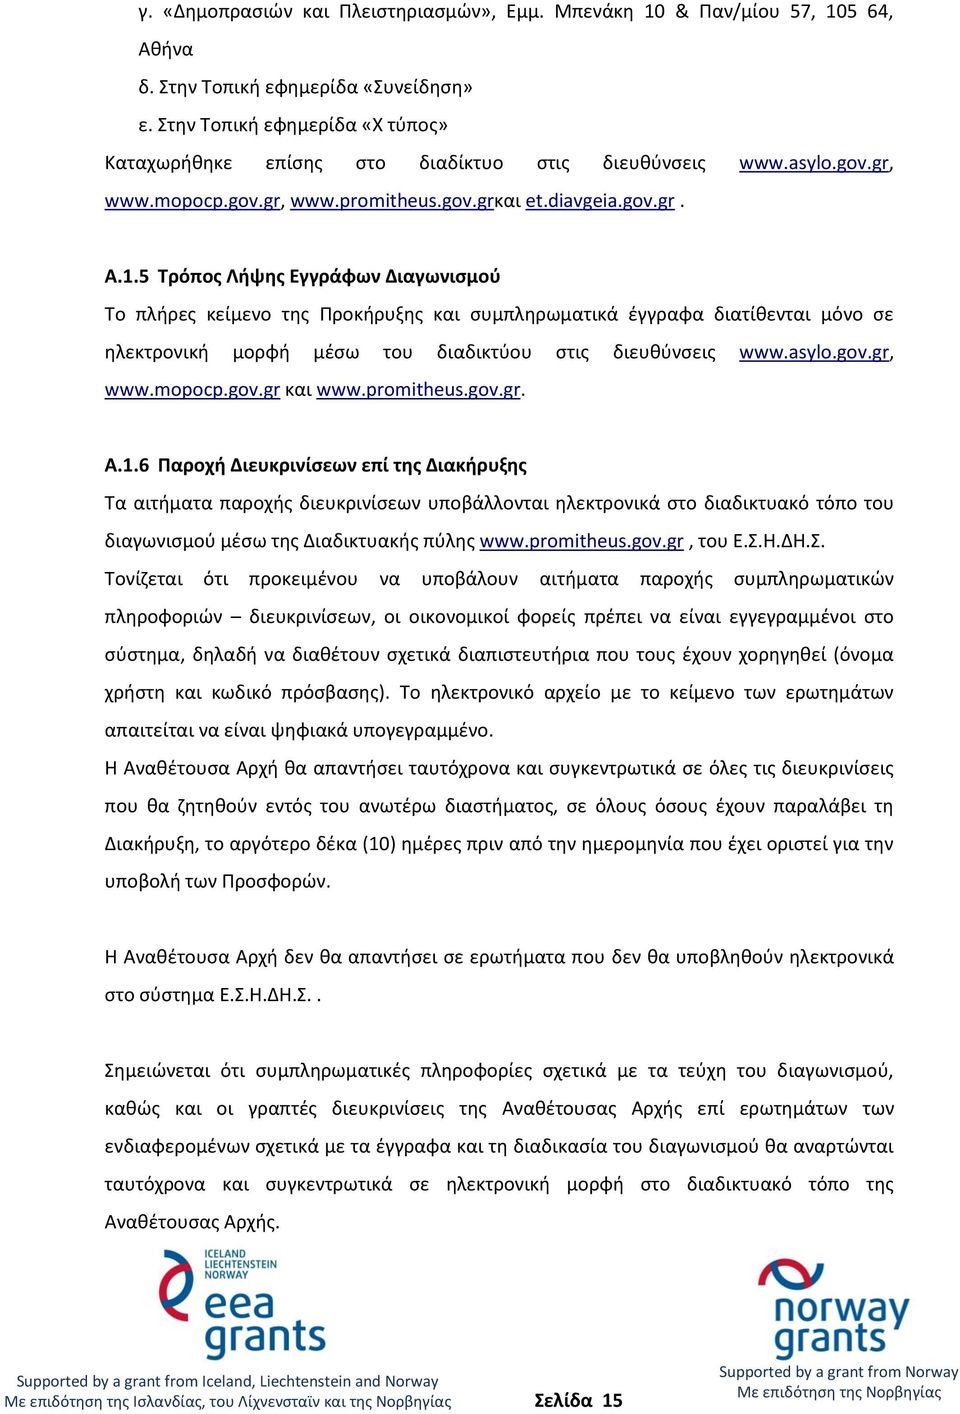 5 Τρόπος Λήψης Εγγράφων Διαγωνισμού Το πλήρες κείμενο της Προκήρυξης και συμπληρωματικά έγγραφα διατίθενται μόνο σε ηλεκτρονική μορφή μέσω του διαδικτύου στις διευθύνσεις www.asylo.gov.gr, www.mopocp.